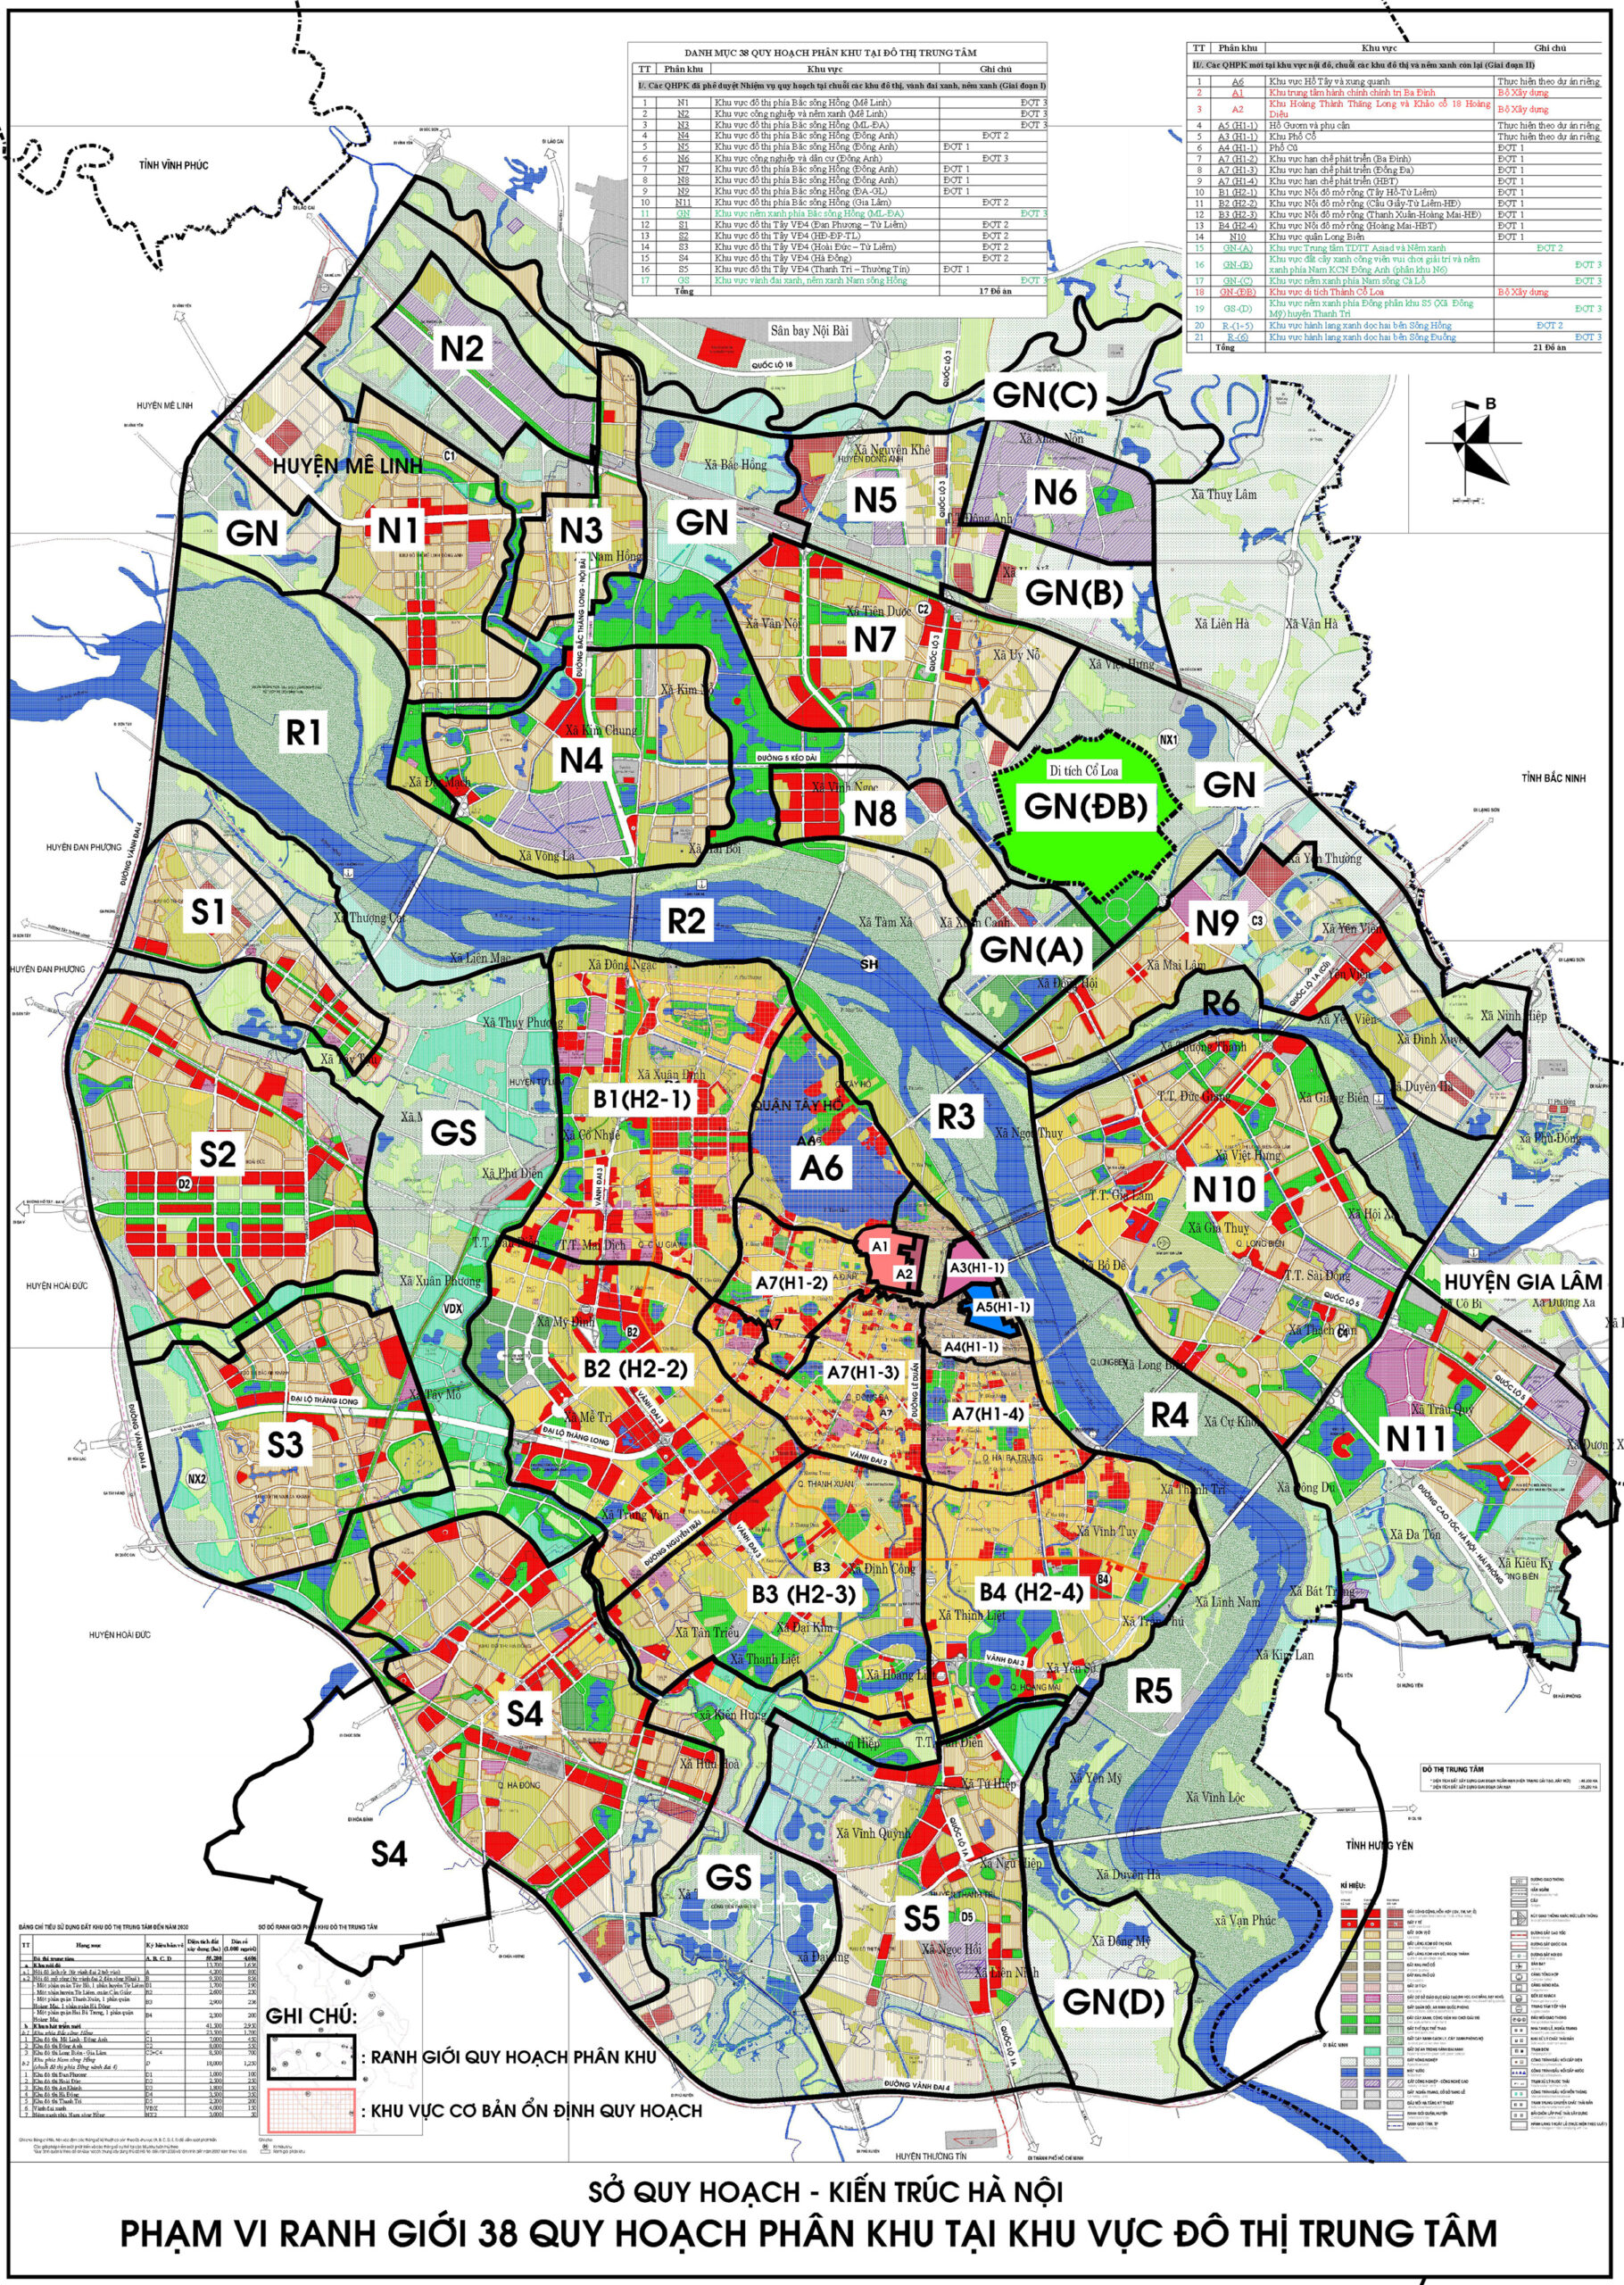 Bản đồ quy hoạch Hà Nội: Bản đồ quy hoạch Hà Nội sẽ cho bạn cái nhìn cụ thể và tổng quát về quy hoạch đô thị của thủ đô. Với những cải tiến và sự phát triển trong công nghệ số, bản đồ quy hoạch Hà Nội sẽ giúp cho việc quản lý đô thị trở nên hiệu quả hơn, đồng thời hỗ trợ cho các dự án phát triển đô thị trở nên chính xác và bài bản hơn.